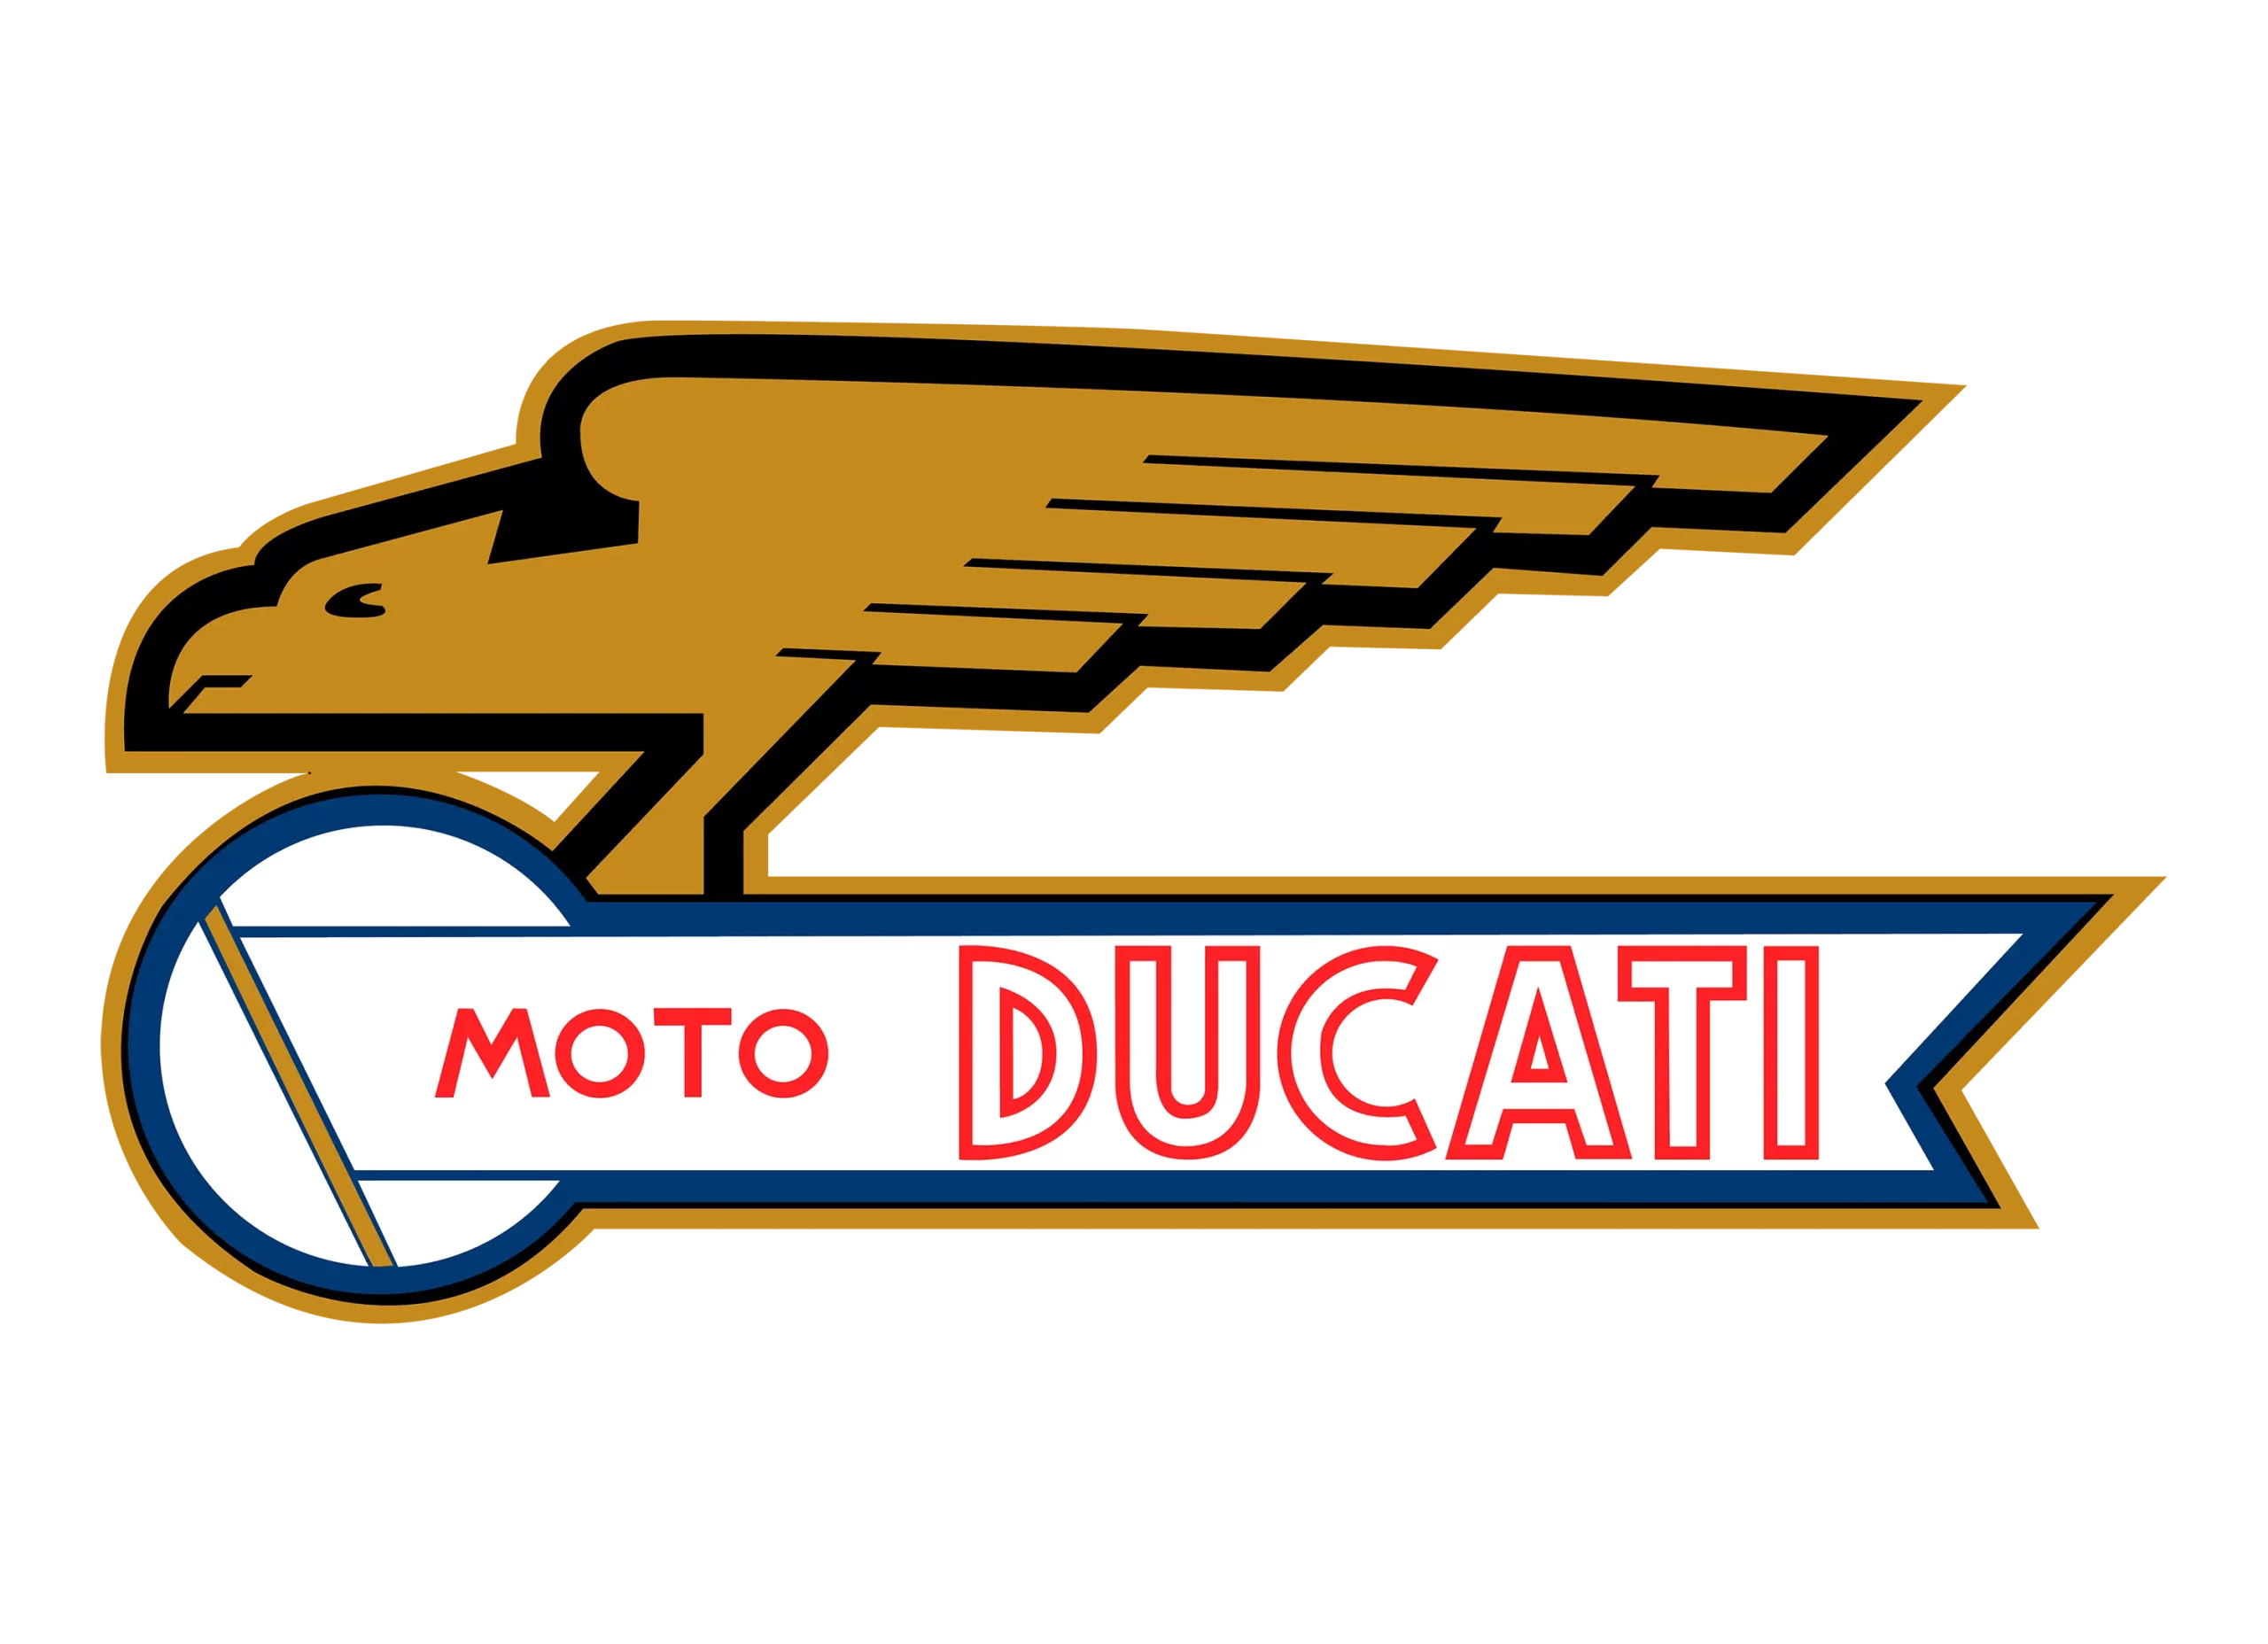 Ducati logo 1959-1967